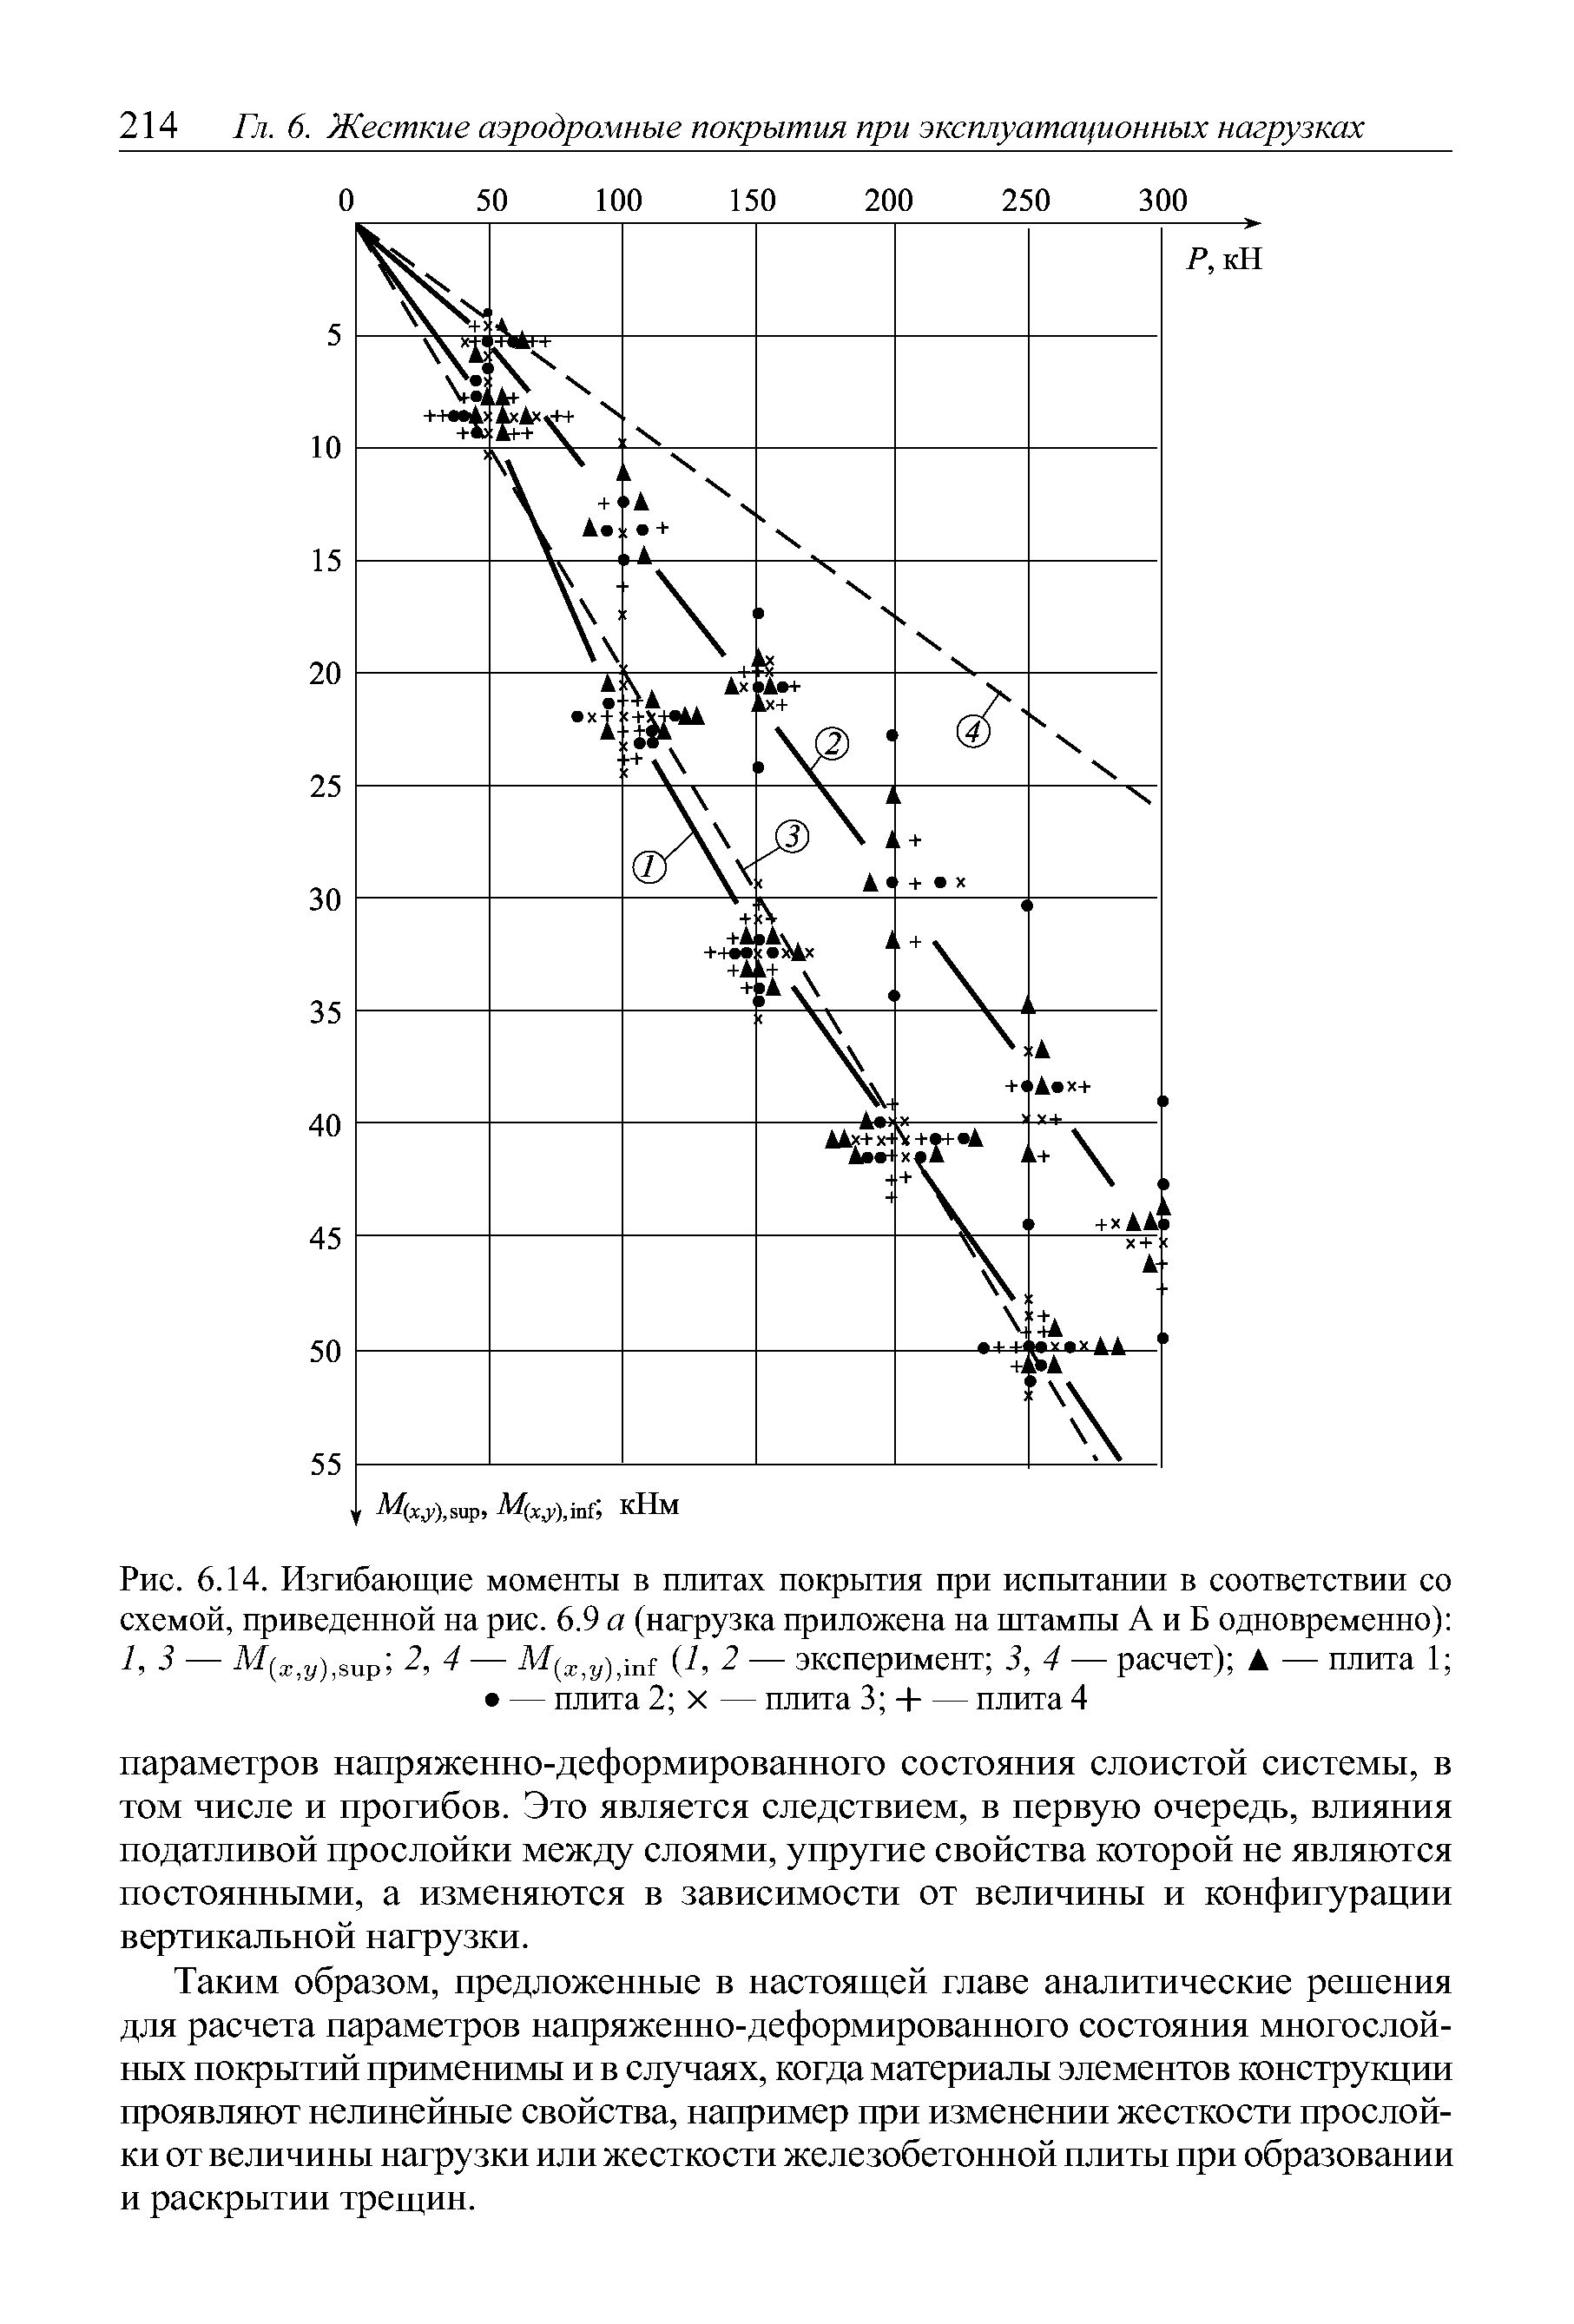 Рис. 6.14. Изгибающие моменты в плитах покрытия при испытании в соответствии со схемой, приведенной на рис. 6.9 а (нагрузка приложена на штампы А и Б одновременно) 1,3 — 2, 4 — 1, 2 — эксперимент 3, 4 — расчет) — плита 1 — плита 2 X — плита 3 Ч--плита 4
